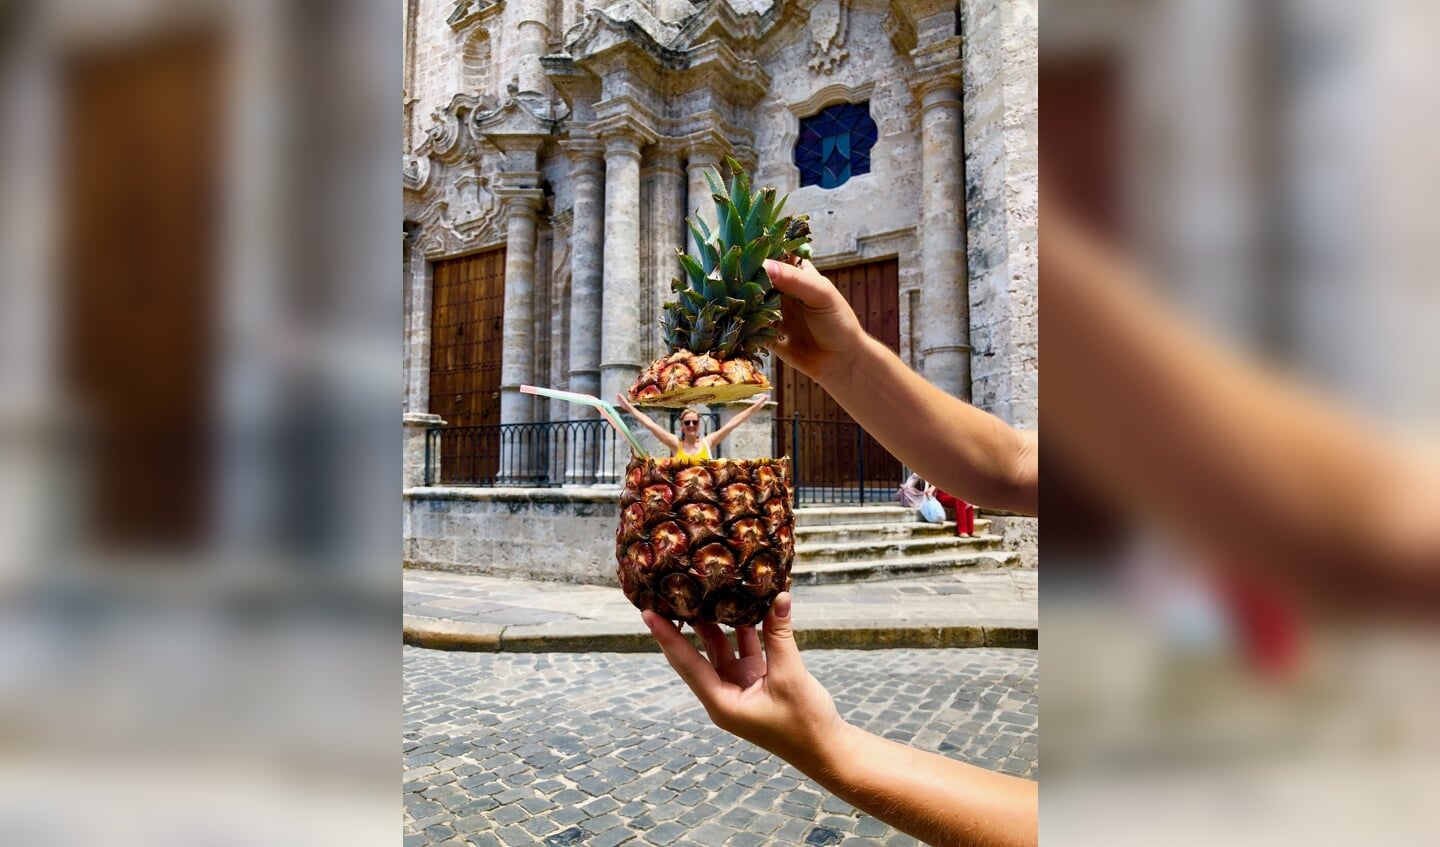 Een tropische verrassing, ingezonden door Jeannette Kroon uit Kootwijkerbroek. De foto is in juni gemaakt in Havana, Cuba. ,,Op de foto staat onze dochter die een drankje drinkt uit een ananas. Dat drankje heet dan ook een Piña Colada.''  